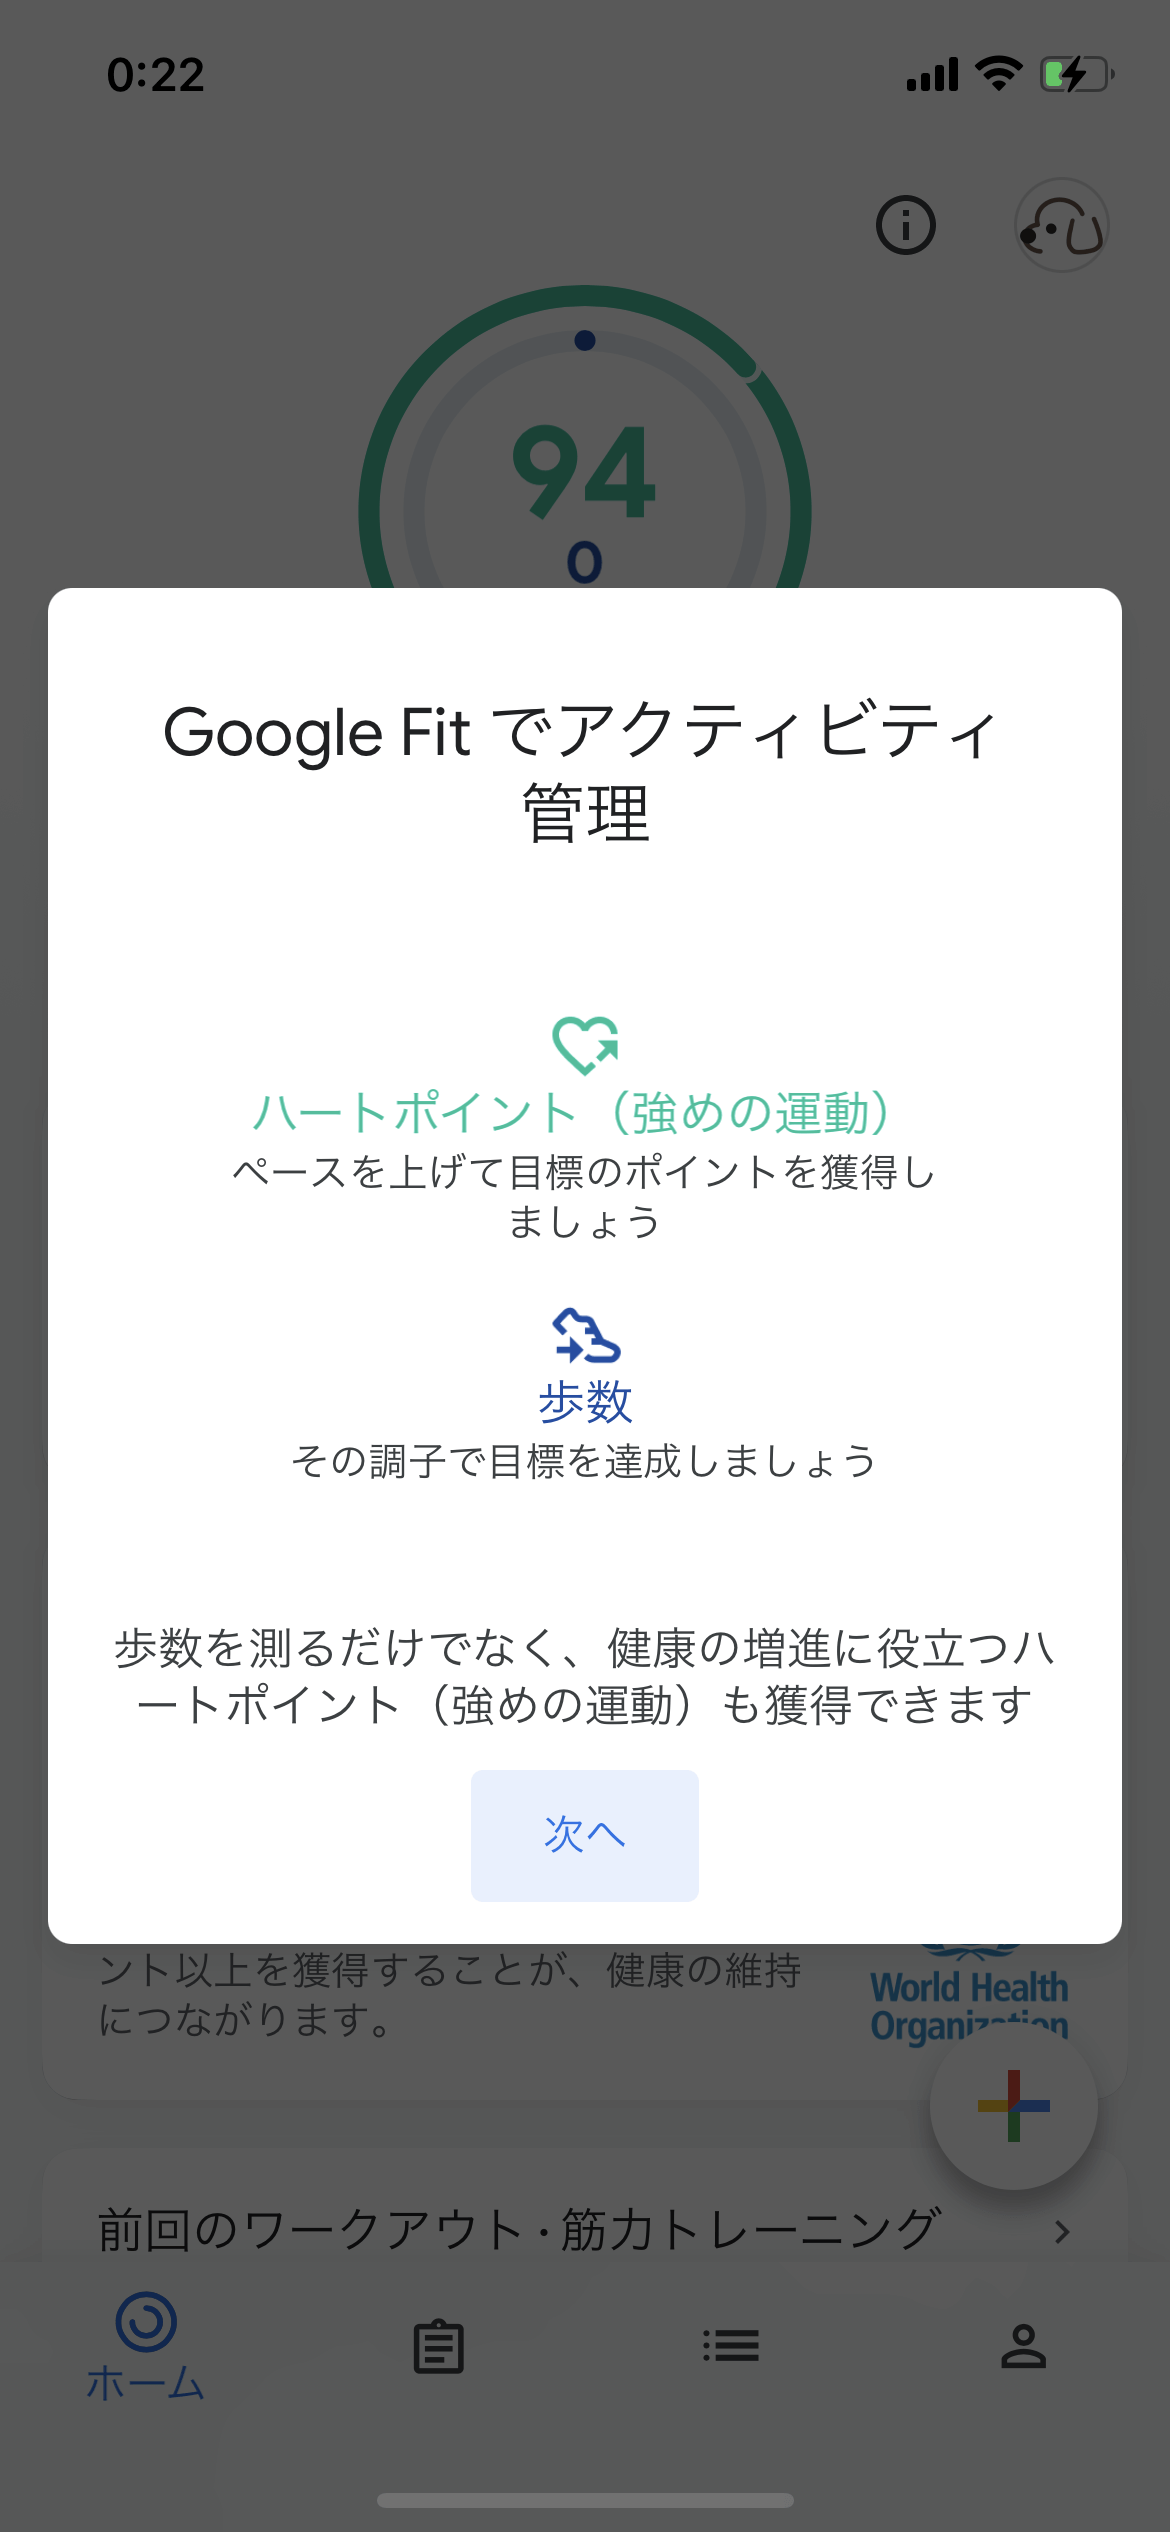 Google Fit ホーム screen